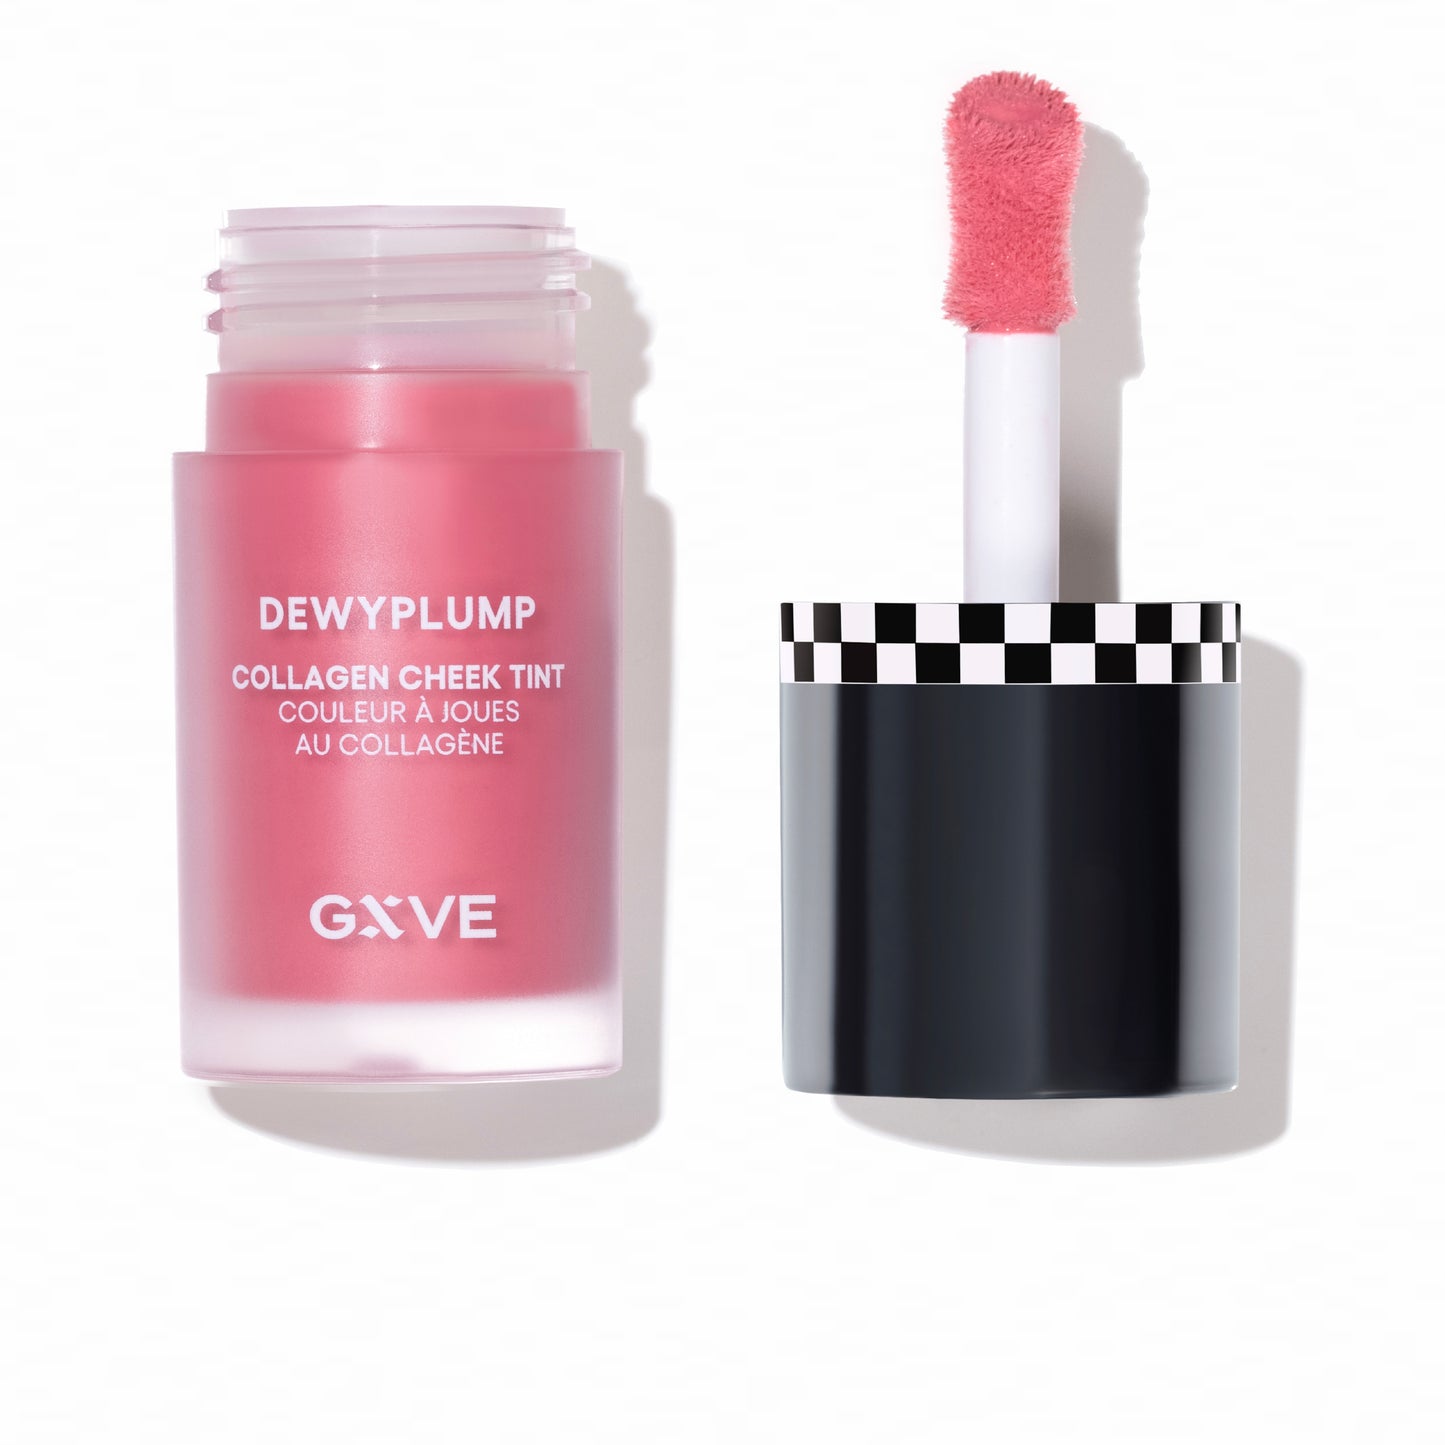 GXVE Bouquet - Clean, High-Performance Liquid Blush